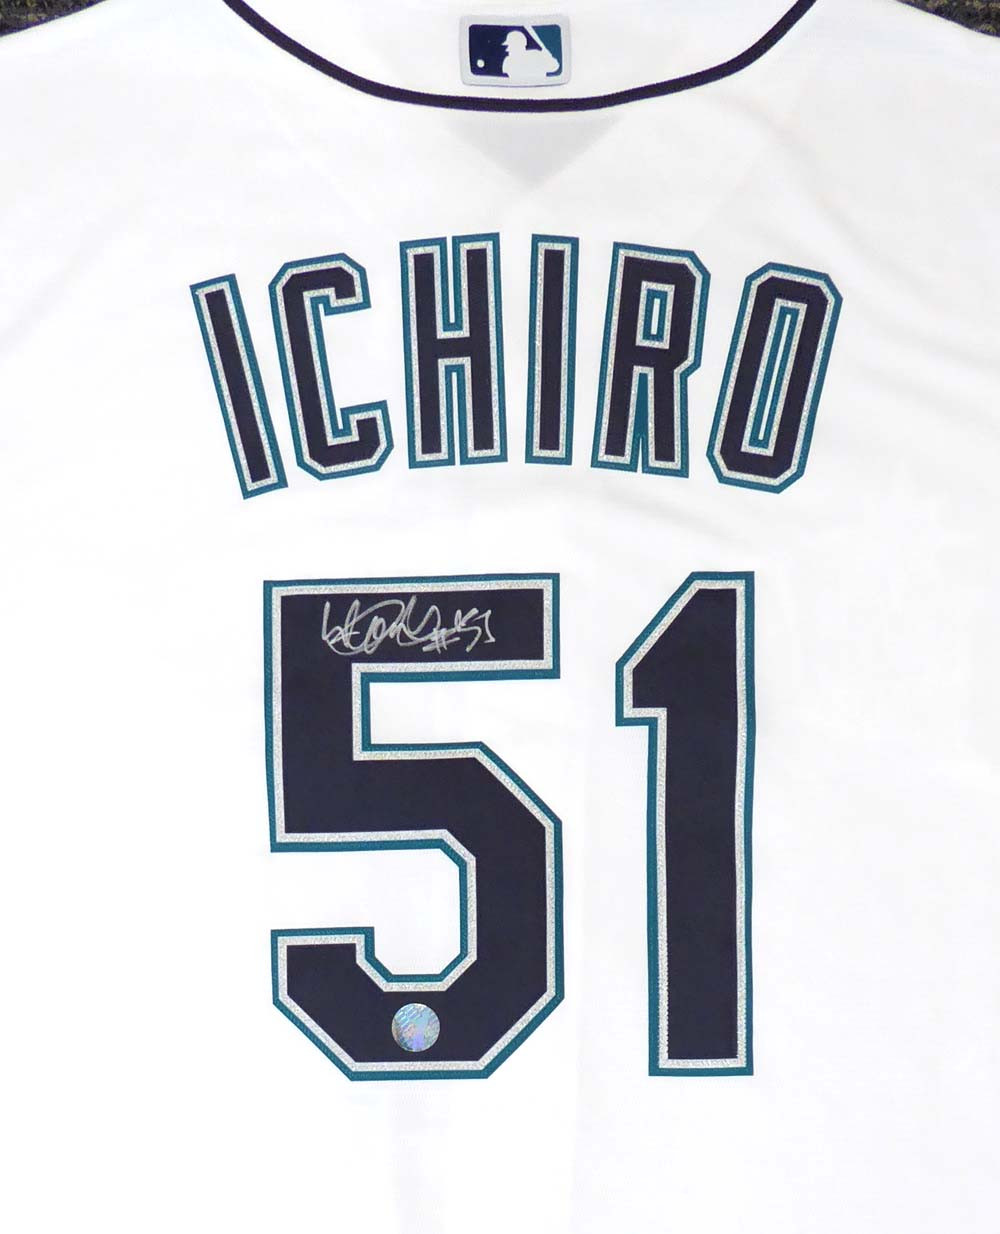 ichiro signed jersey